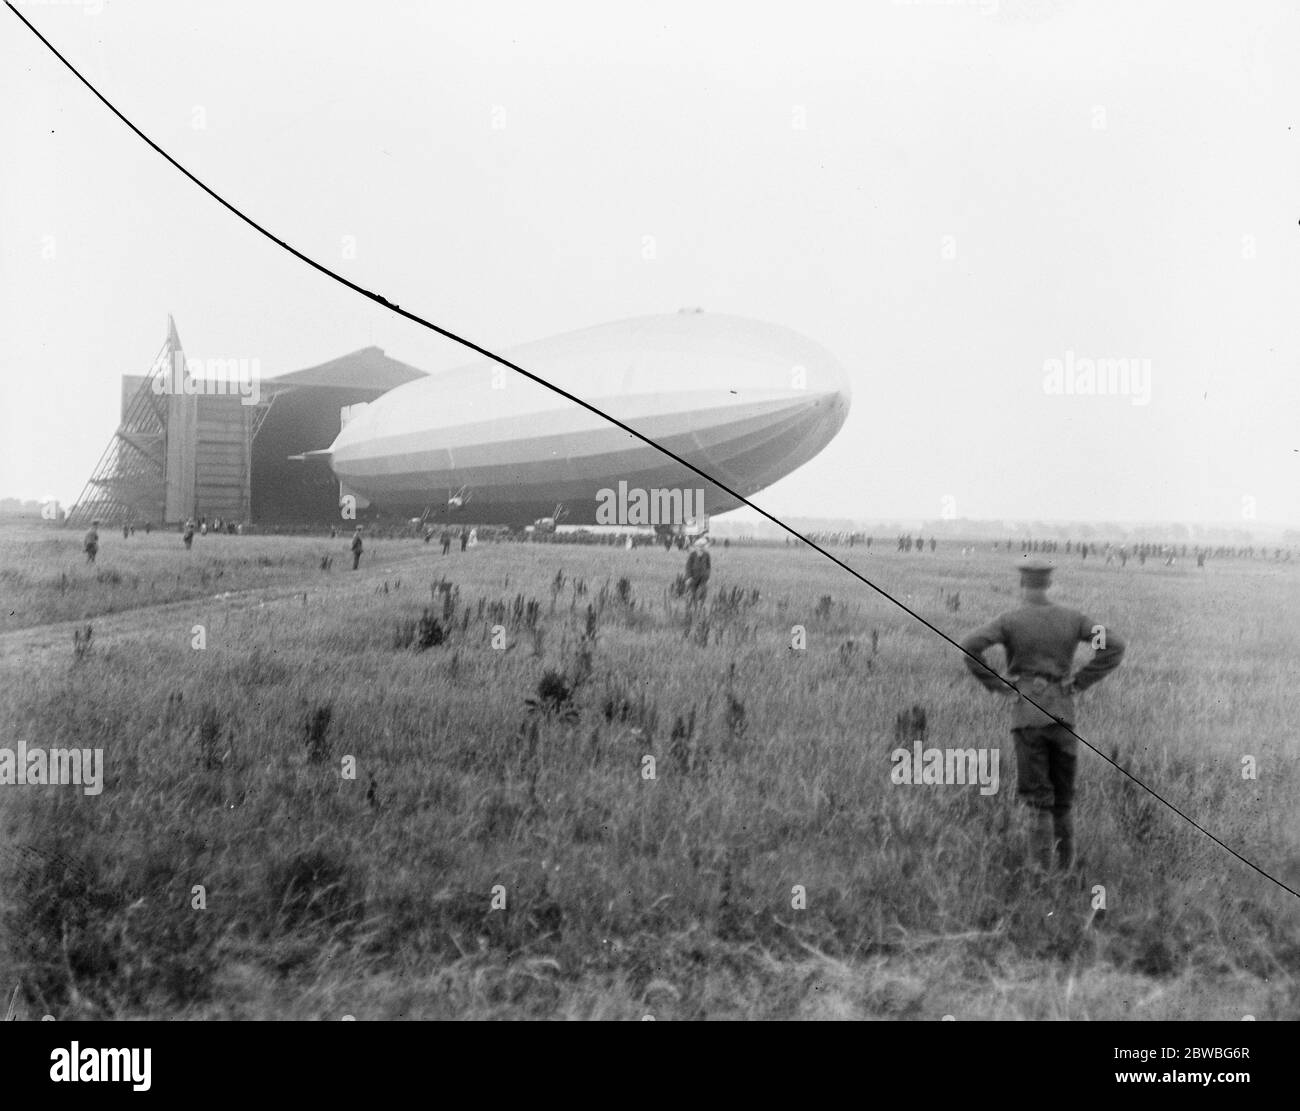 Giant Airship costruita per la Marina americana fa il suo primo volo l'Airship R 38 costruita a Cardington Aerodromo per la Marina degli Stati Uniti è salito dall'Aerodromo circa 10 o ' orologio la sera scorsa e cruizzato su Bedford e via al Nord Est 24 giugno 1921 Foto Stock